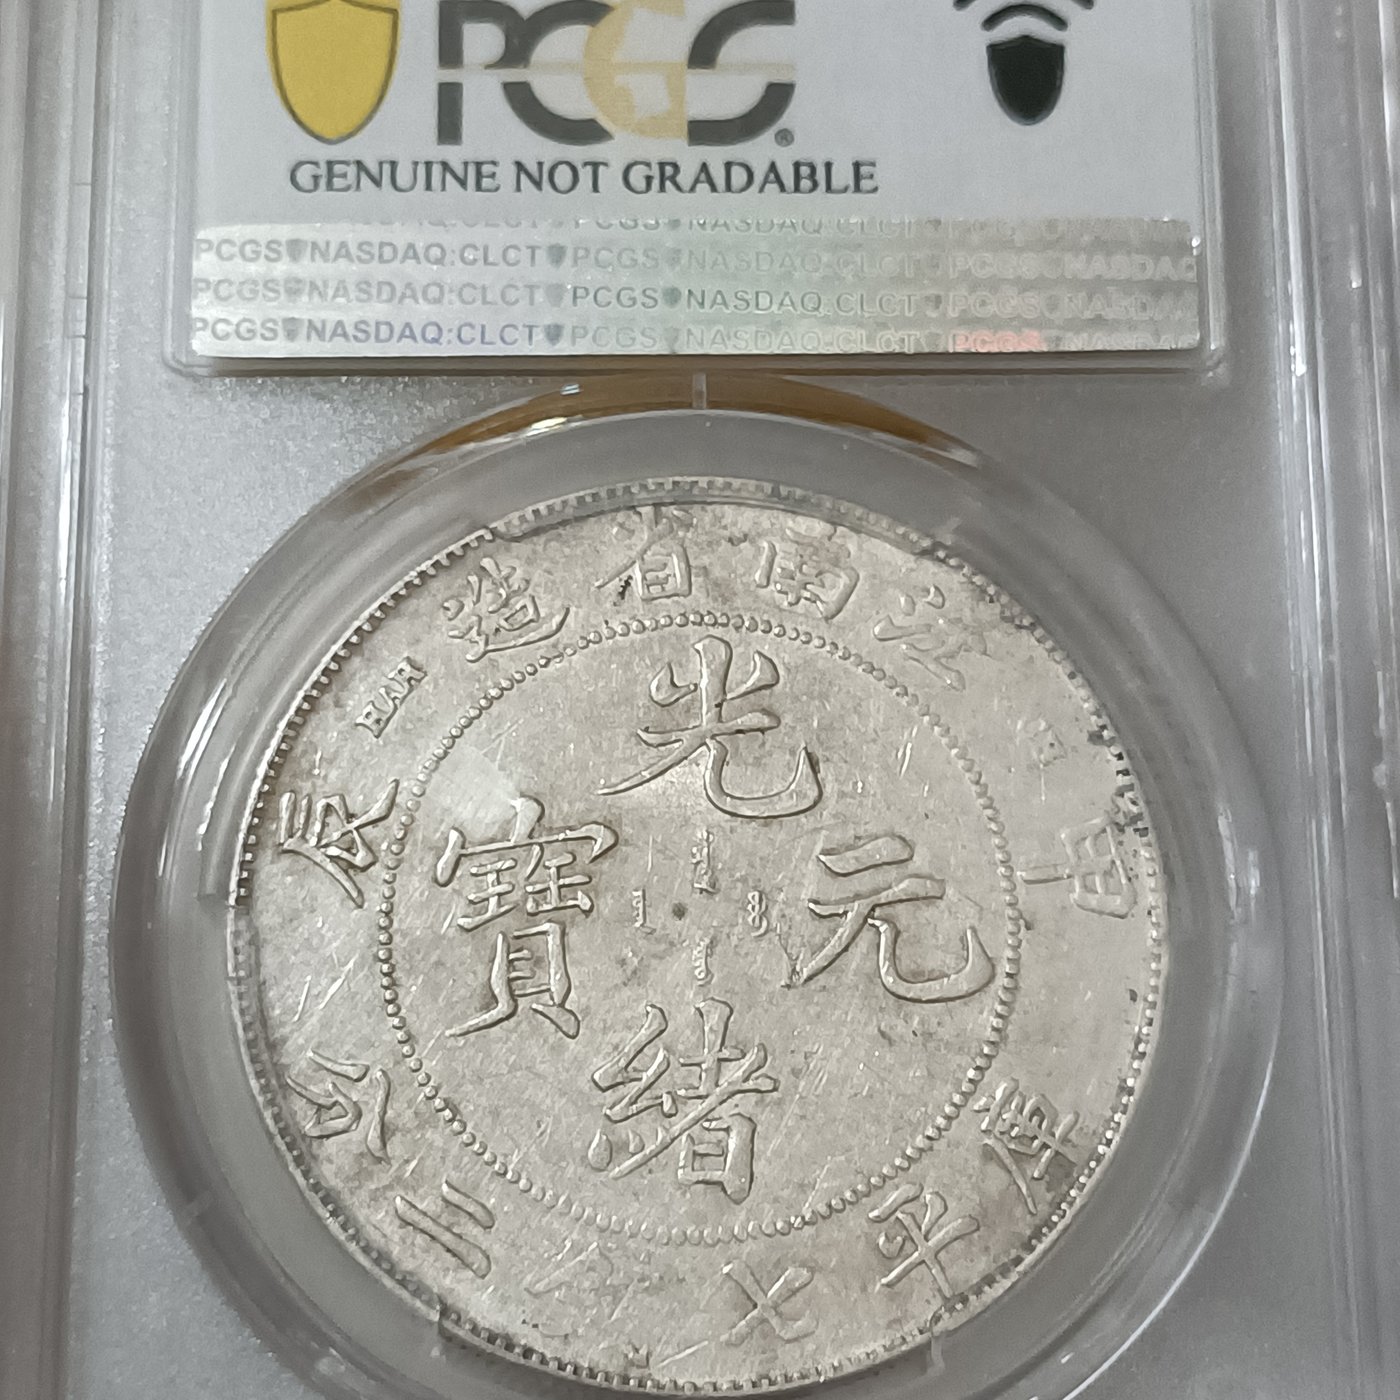 1908年 中国 光緒元宝 1ドル 銀貨 NGC XF DETAILS - アンティーク/コレクション